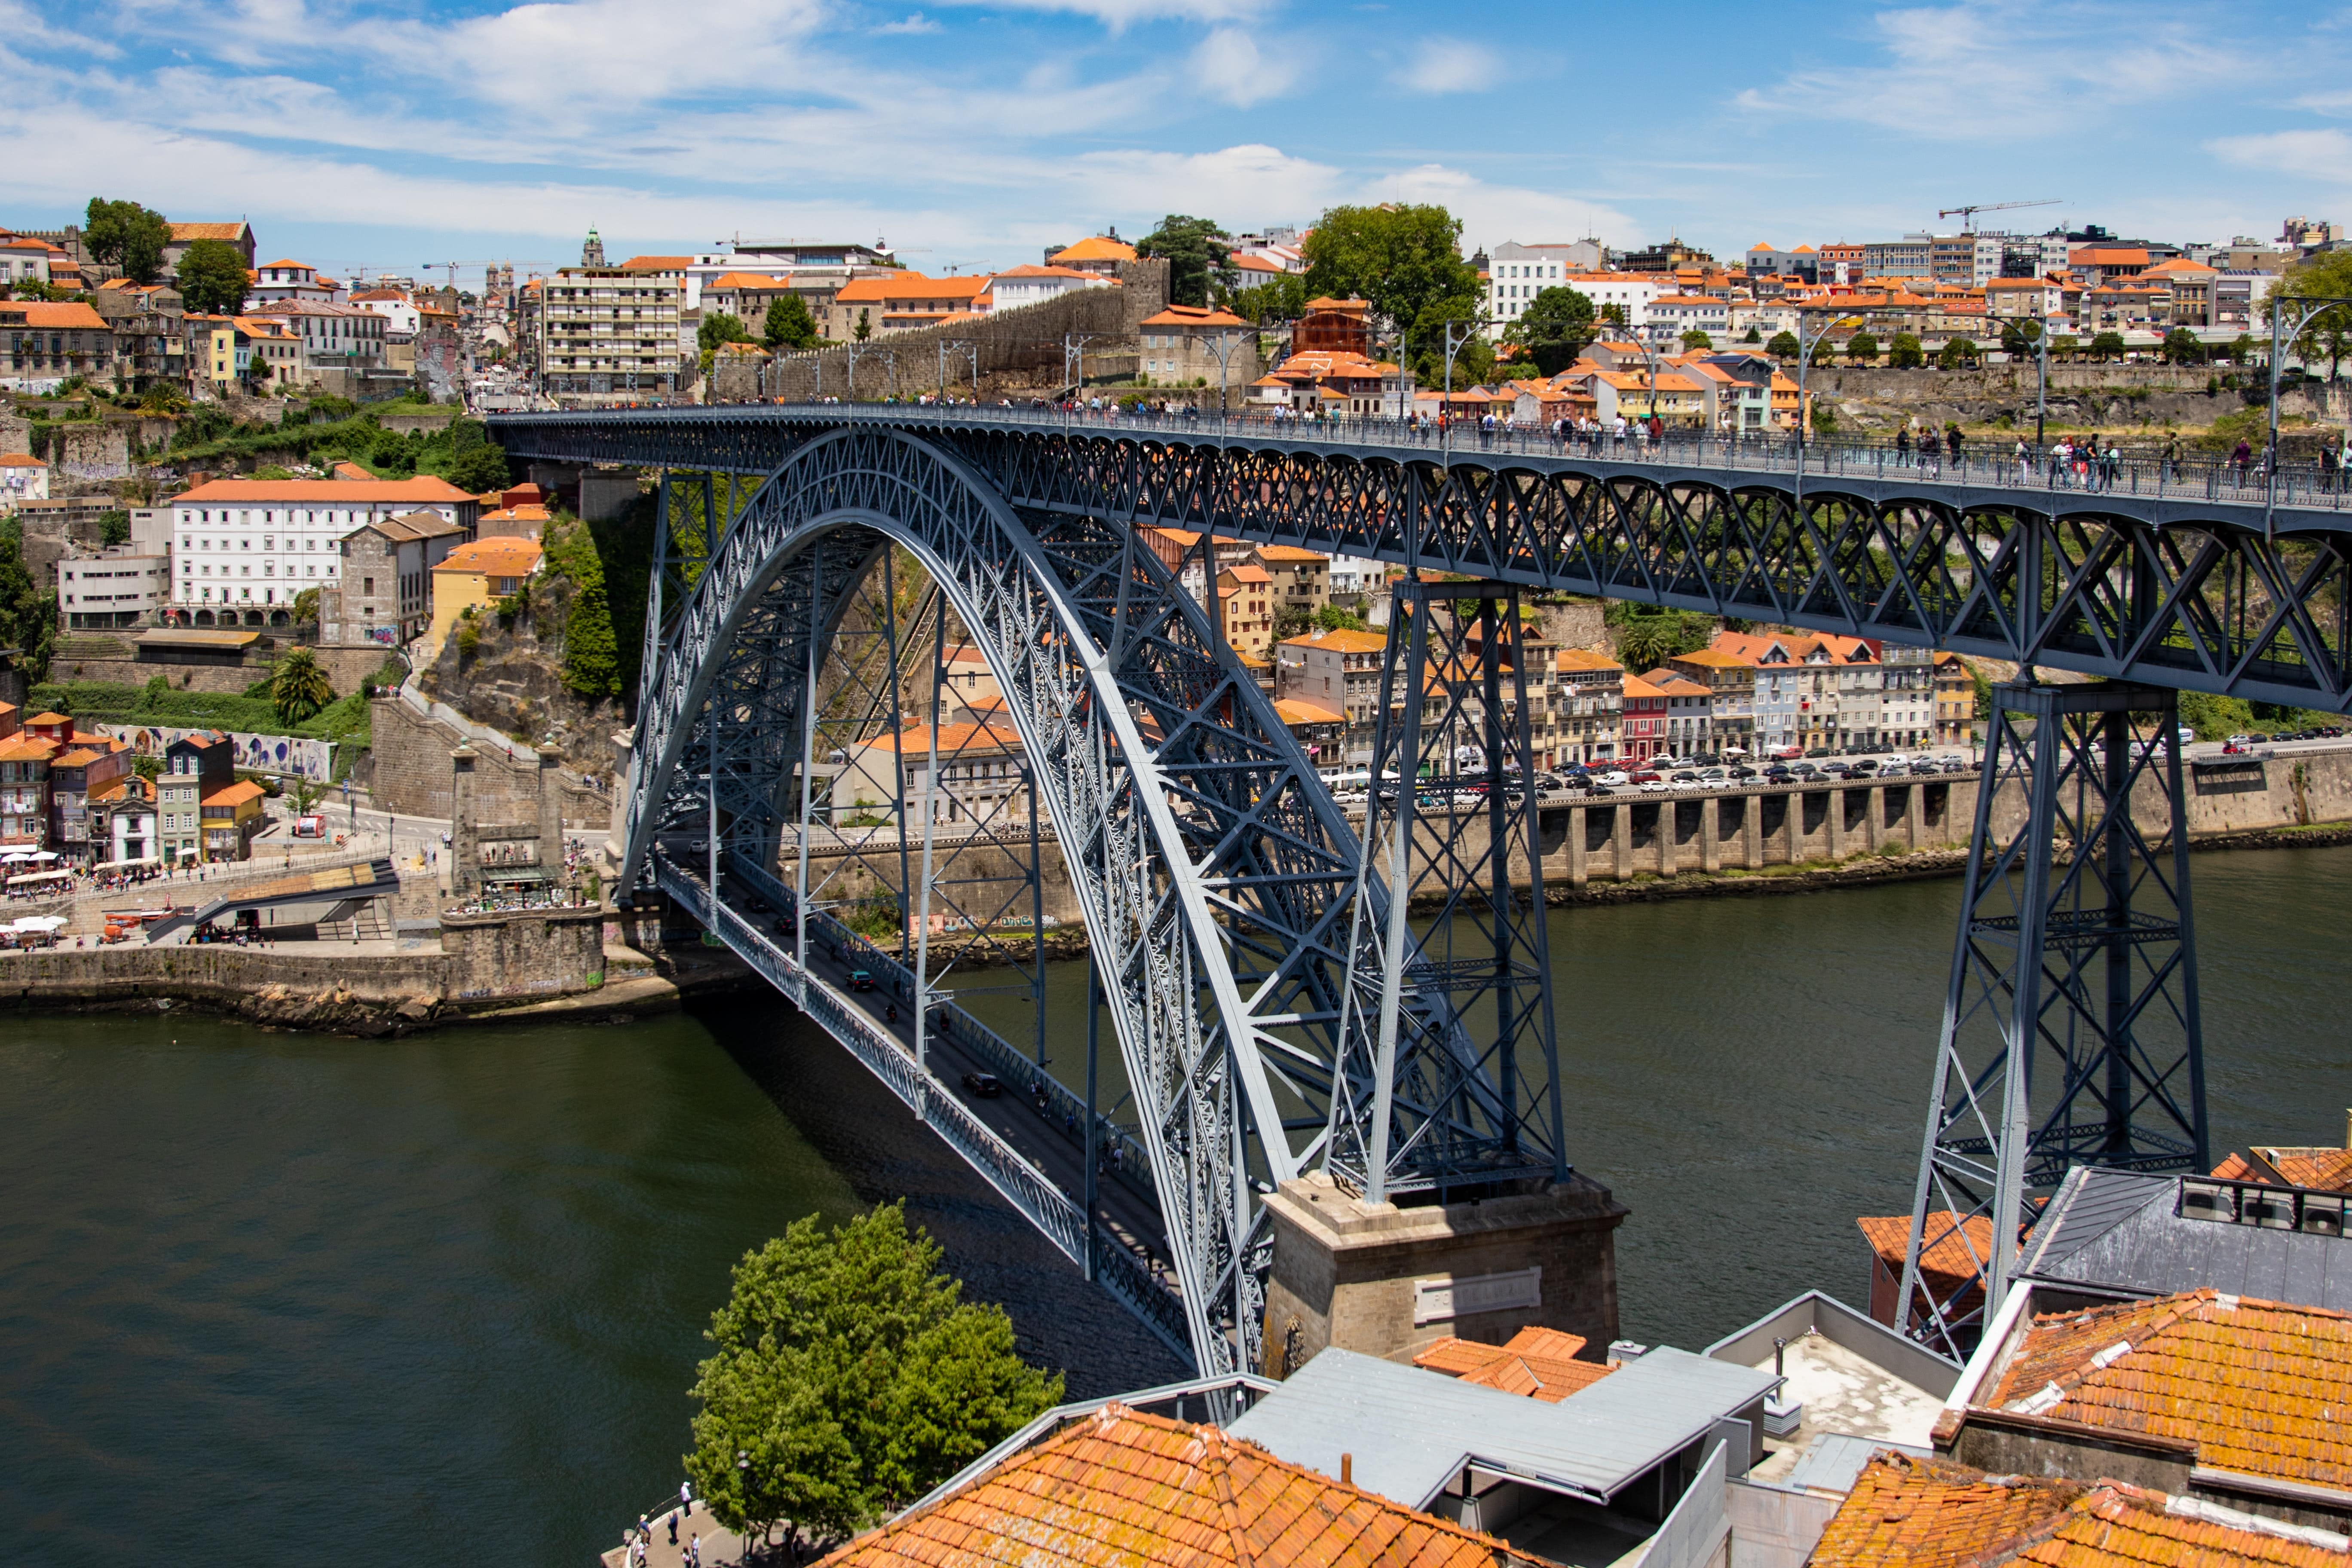 The D. Luis I bridge in Porto, Portugal EOR services